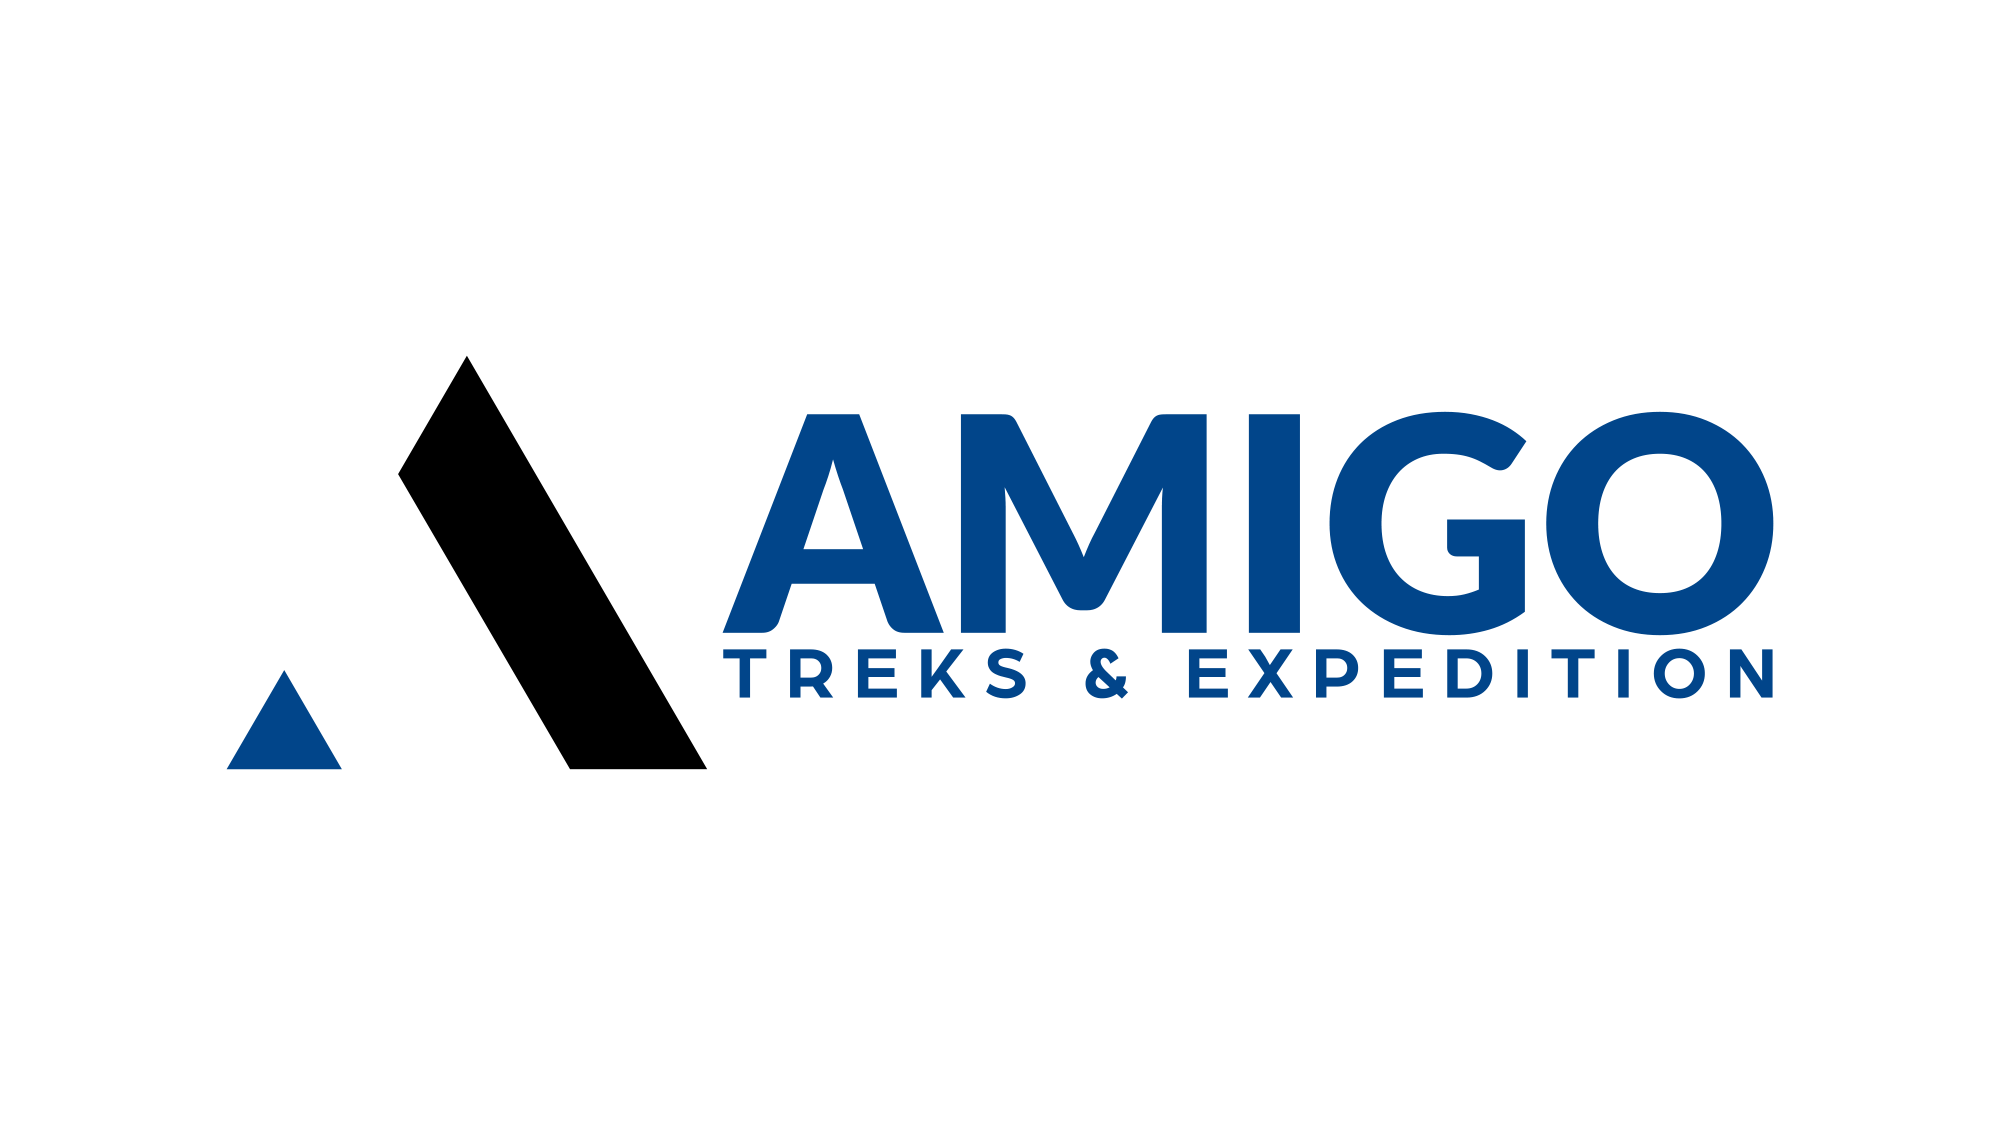 AMIGO TREKS AND EXPEDITION